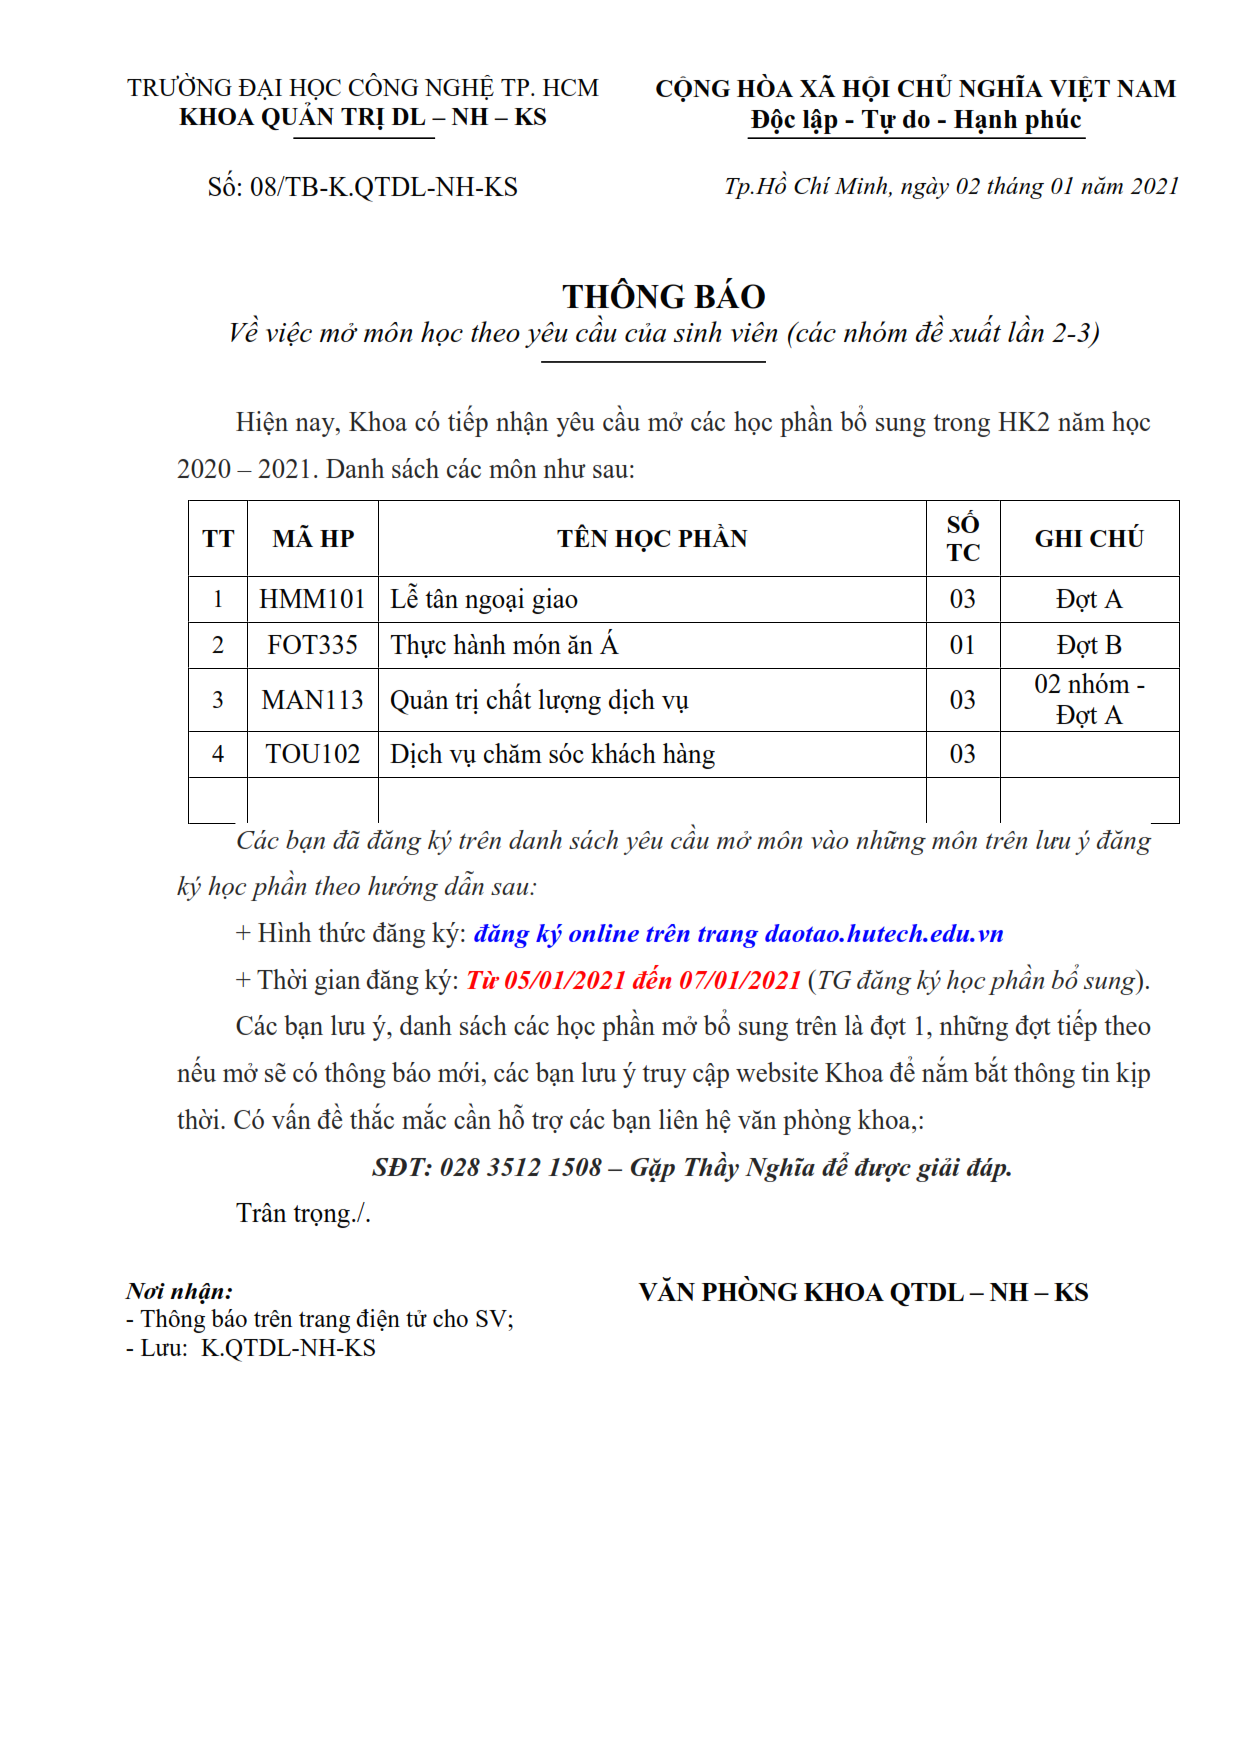 TB số 08/TB-QTDL-NH-KS về việc mở các môn theo yêu cầu trong HK2 - 2020 - 2021 - Lần 2 2